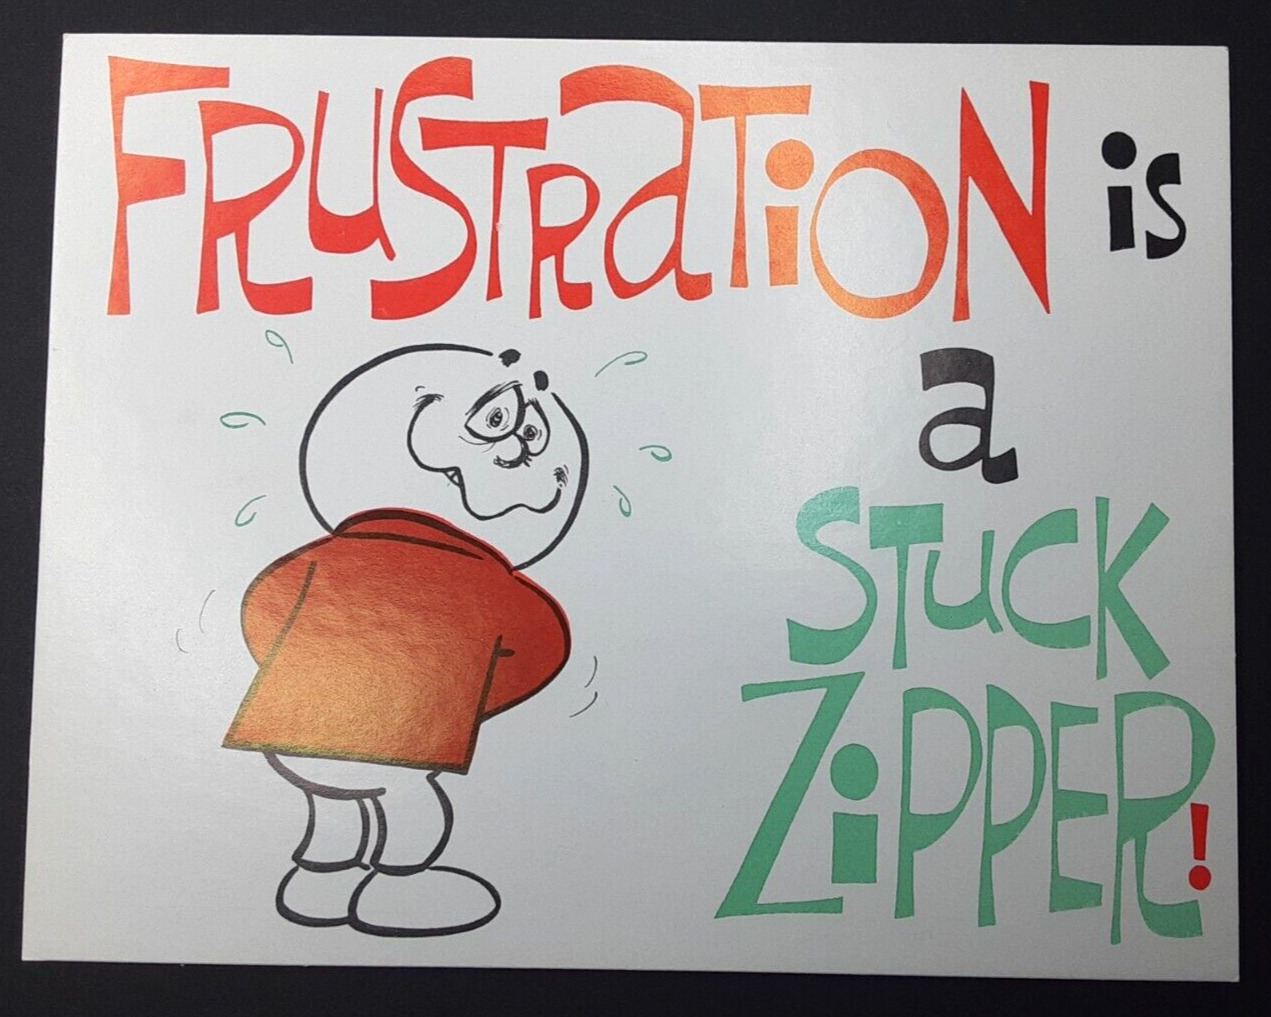 Frustration Is A Stuck Zipper Funny Sign Bathroom Humor Plaque Fun Retro Décor